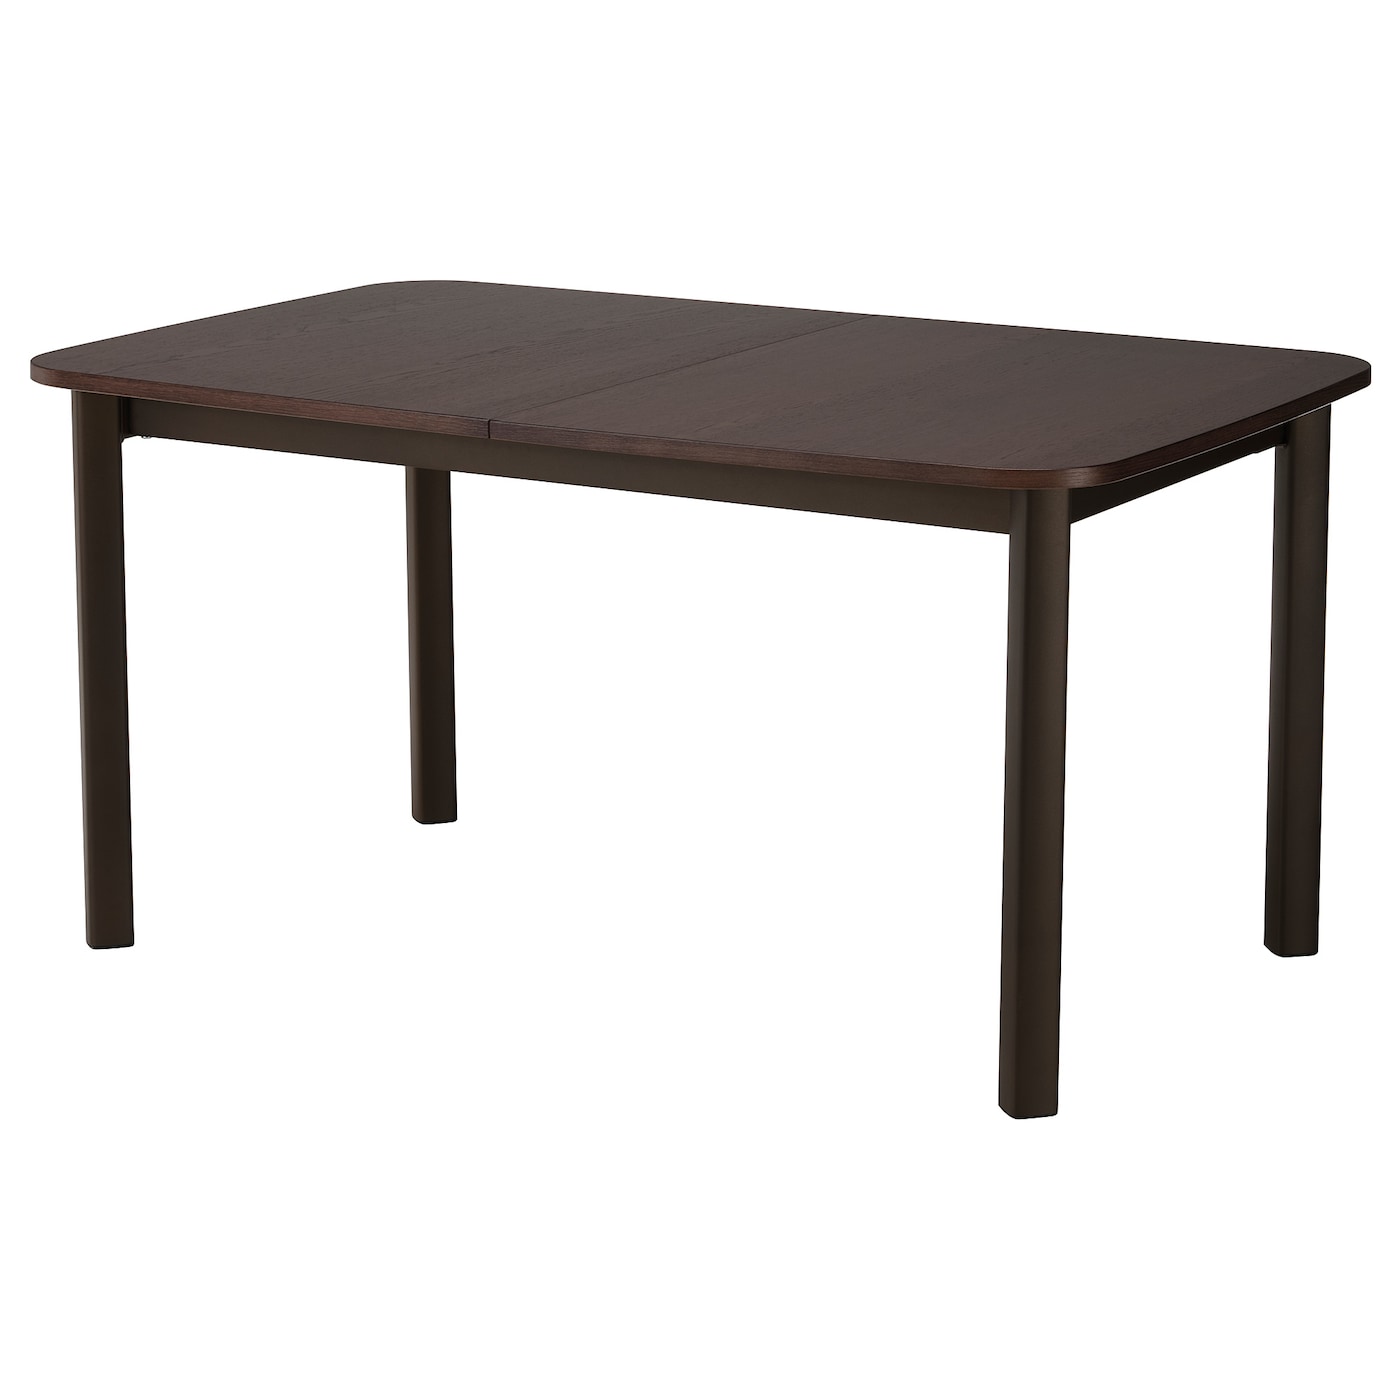 Раздвижной обеденный стол - IKEA STRANDTORP, 260/205х95х75 см, коричневый, СТРАНДТОРП ИКЕА